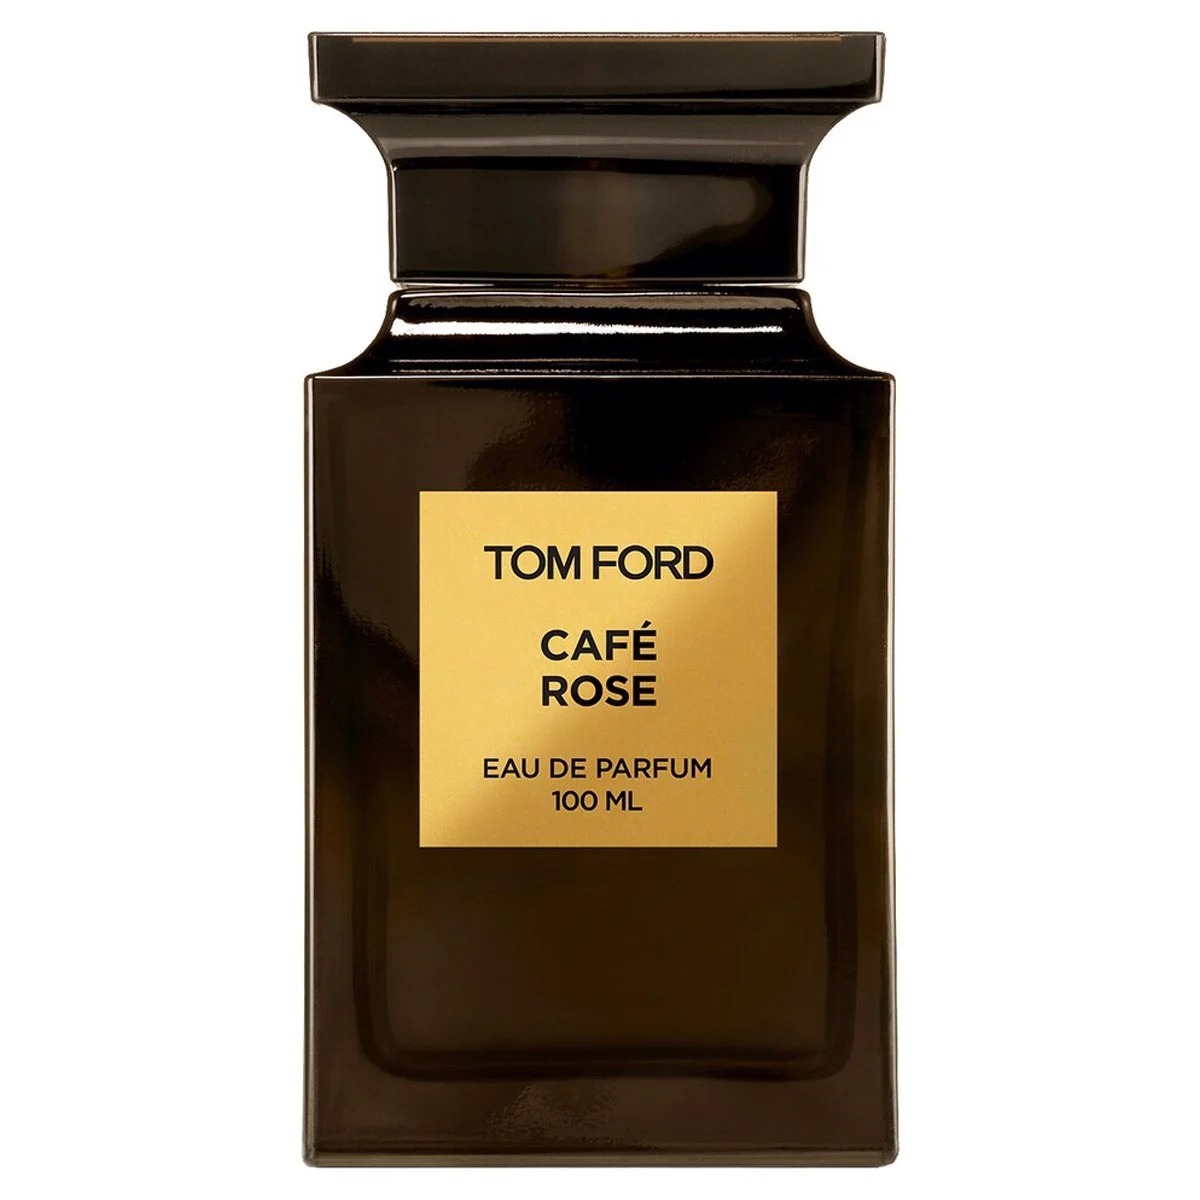 Tom Ford Cafe Rose